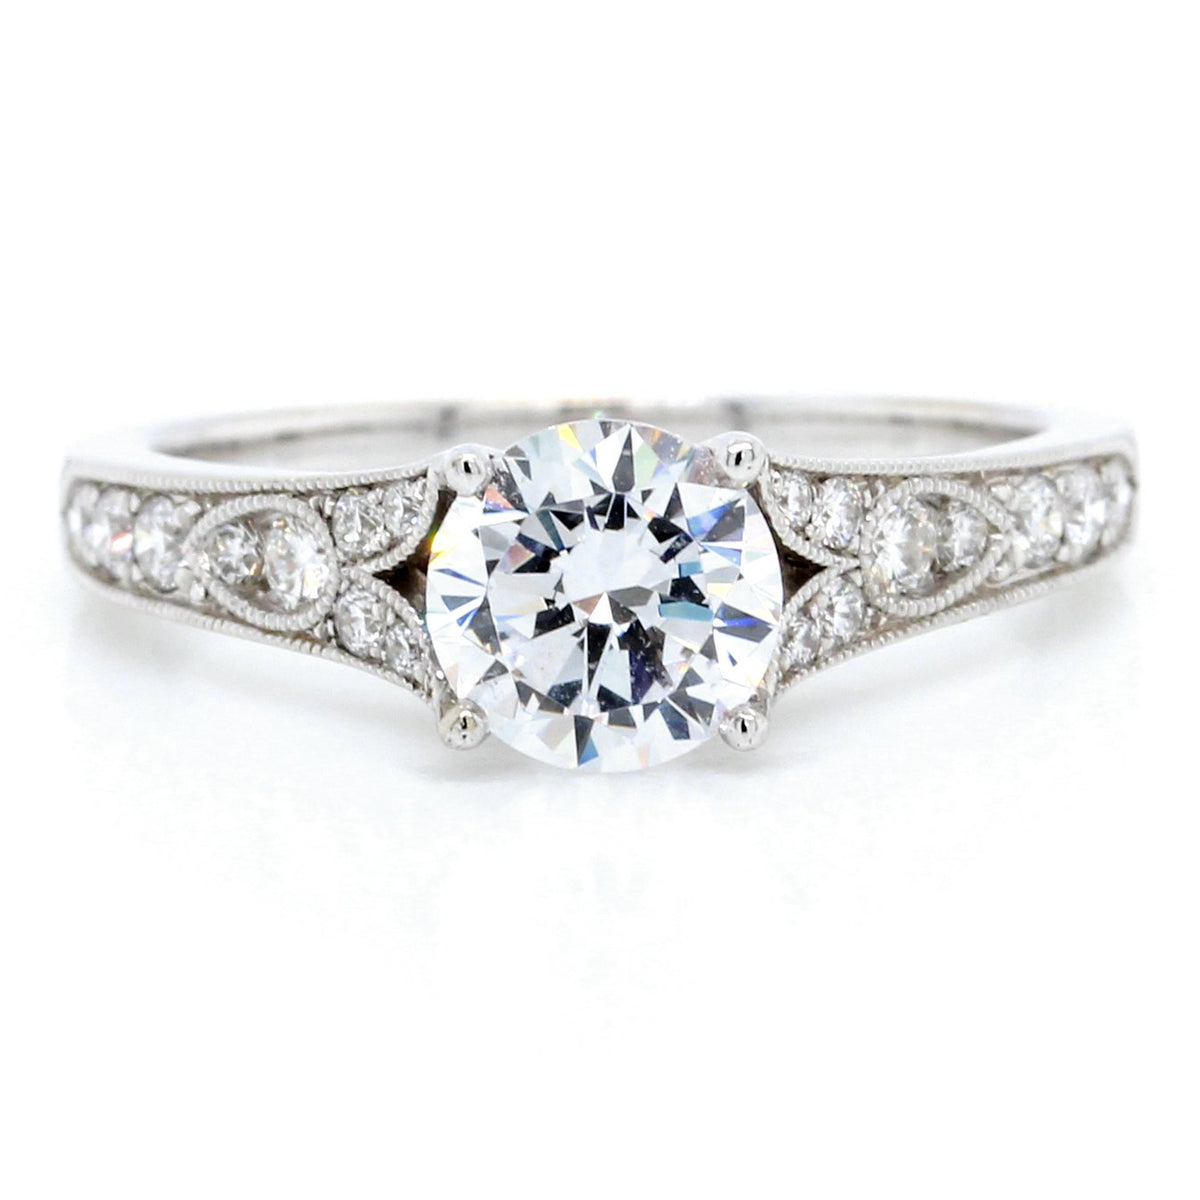 18K White Gold Vintage Style Milgraine Engagement Ring